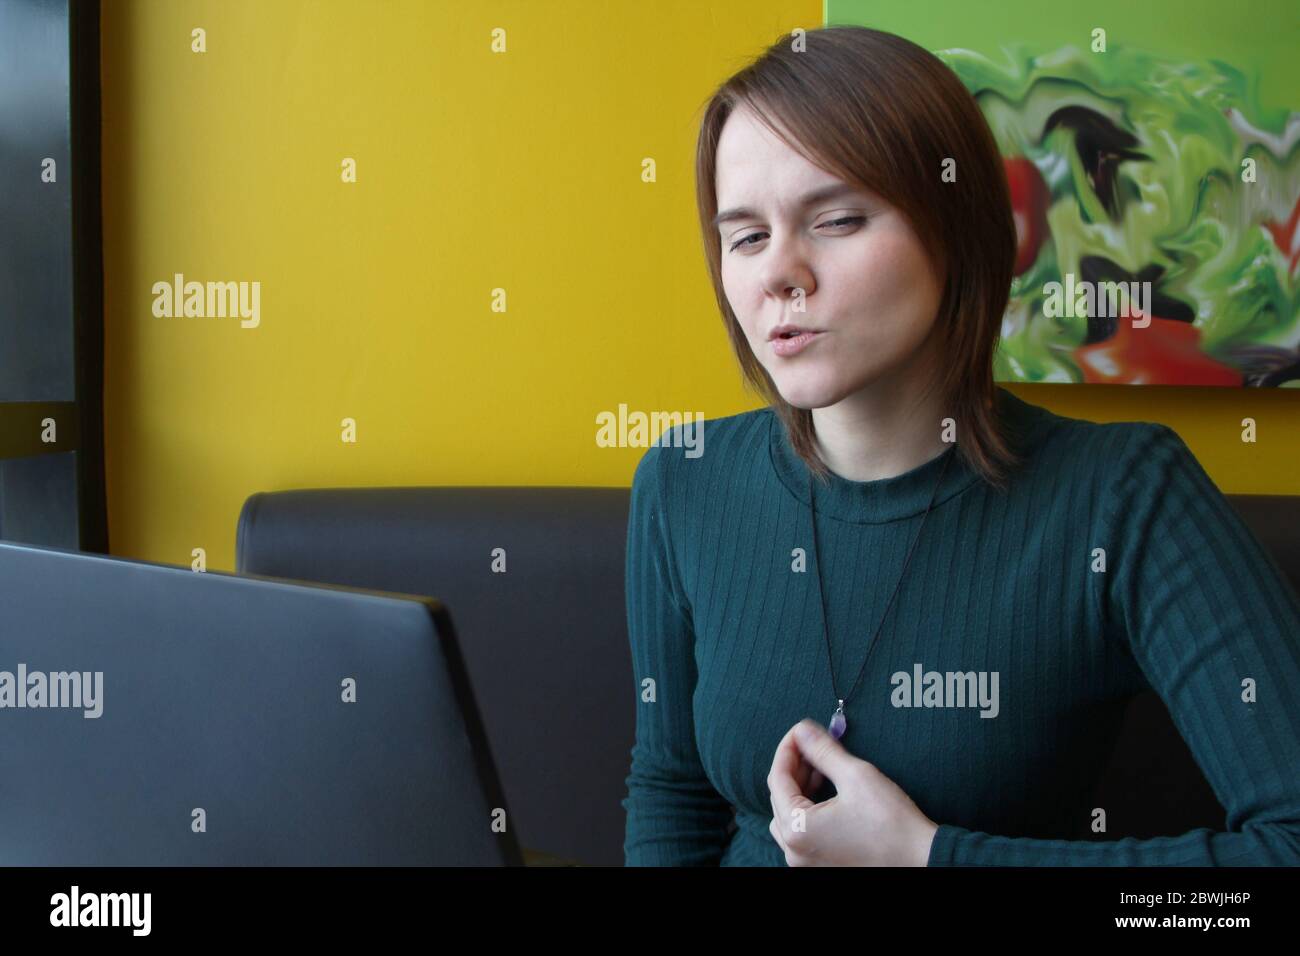 Una ragazza con un'espressione penosa di tensione sul suo viso si siede, lavorando a un computer portatile a un tavolo in un bar su un divano marrone contro una parete gialla. Tiene un gioiello sul petto con la mano. Foto Stock